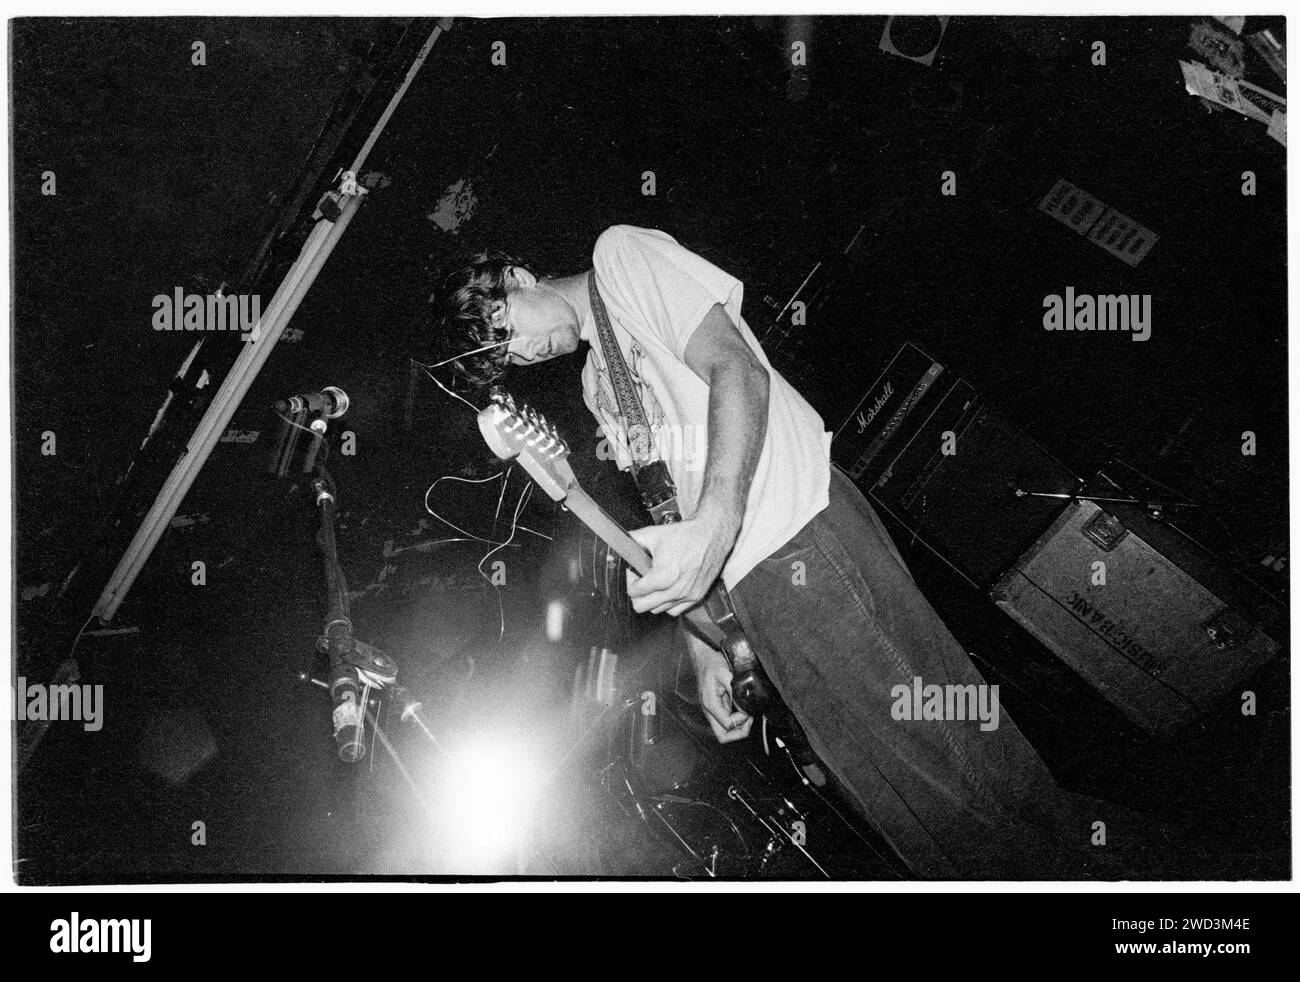 Glen Galloway von Trumans Water spielt live im Bristol Bierkeller Room am 20. September 1993. Foto: Rob Watkins. BAND INFO: Trumans Water, eine experimentelle Indie-Rock-Band, die 1991 in San Diego gegründet wurde, schuf einen unverwechselbaren Sound, der Geräusche, Psychedelia und Punk miteinander verbindet. Mit unvorhersehbaren Strukturen und glühender Energie stellten sie Konventionen in Frage und hinterließen ein unauslöschliches Zeichen in der Underground-Musikszene. Stockfoto